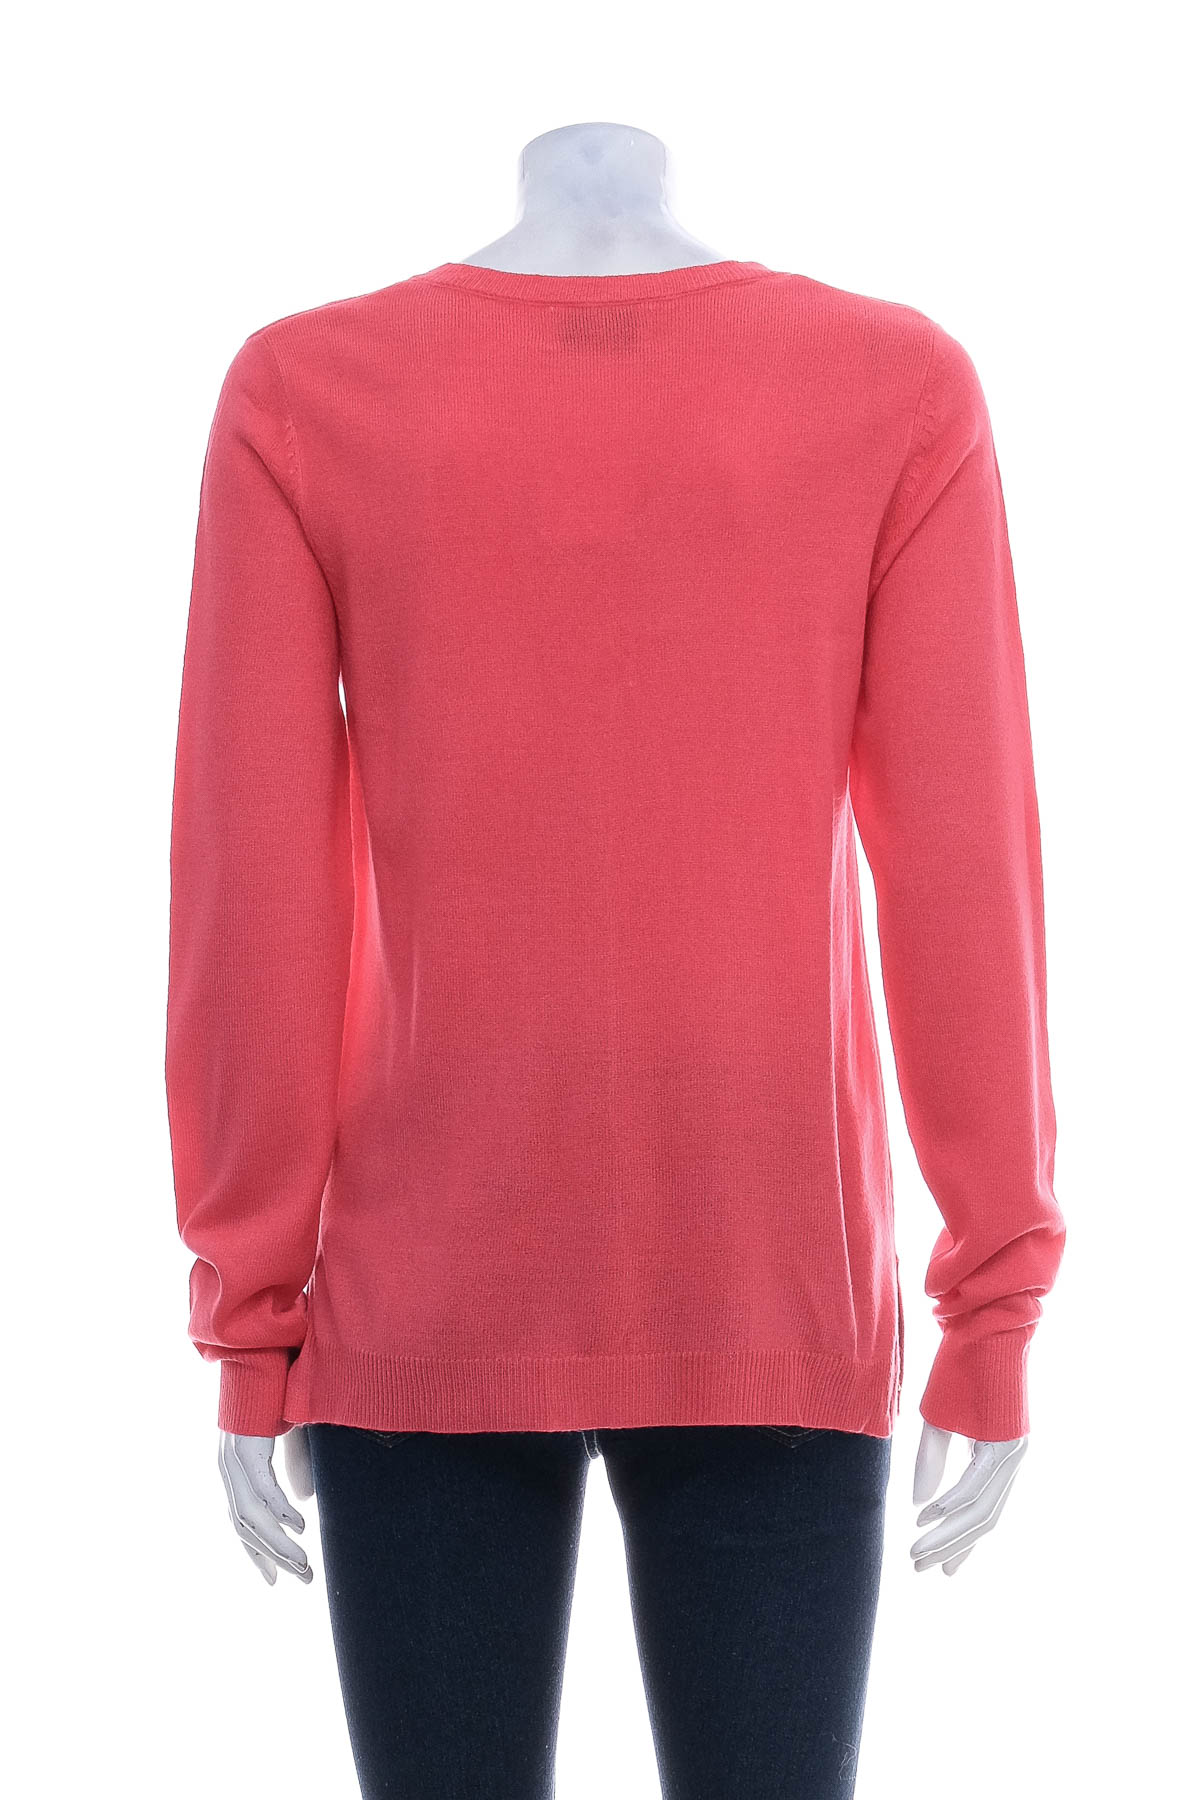 Дамски пуловер - The Basics x C&A - 1